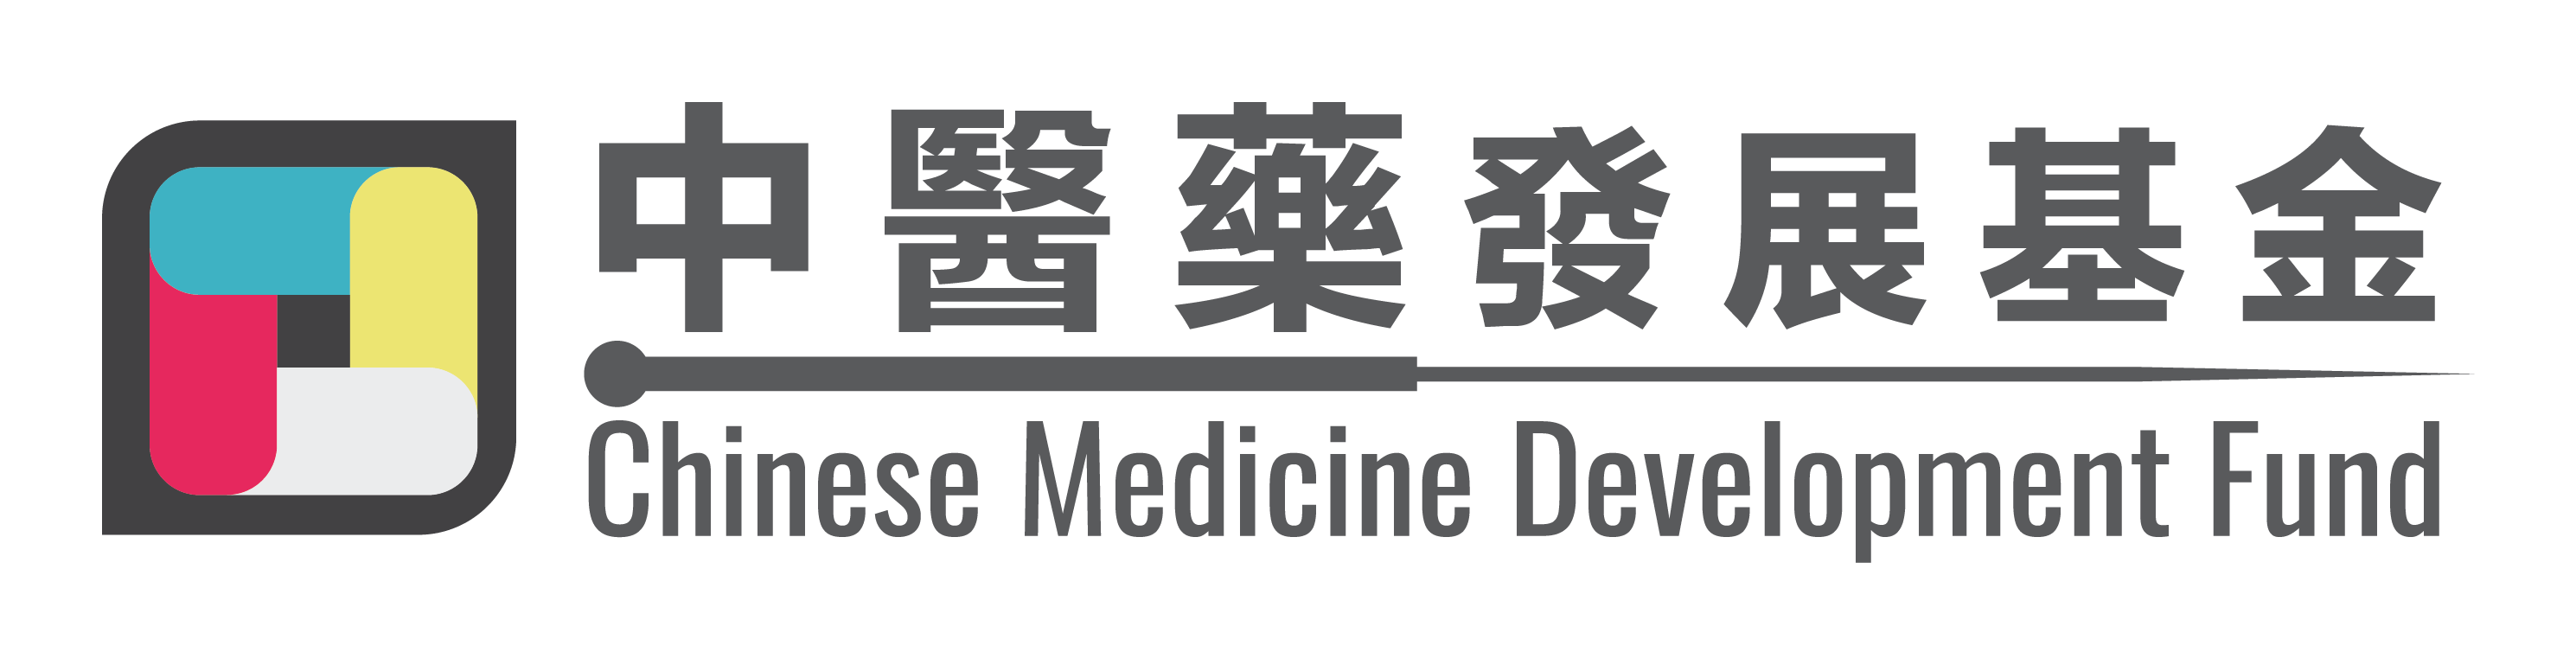 中医药发展基金 (CMDF) logo